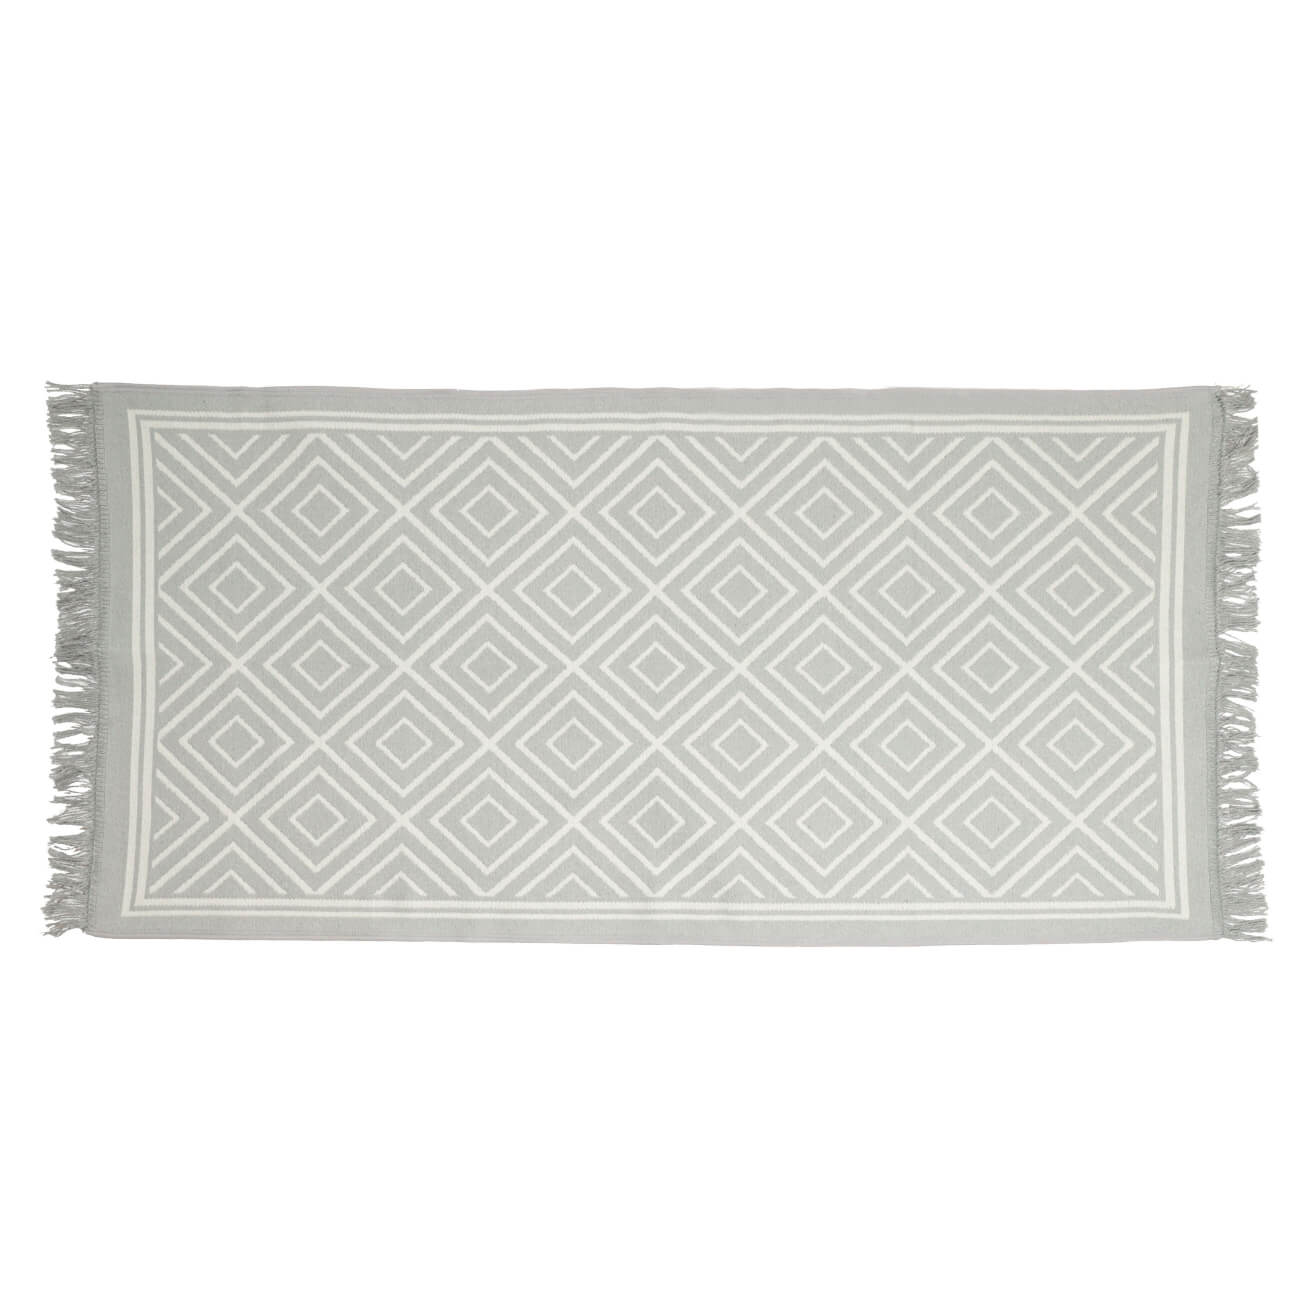 Коврик, 80х150 см, двусторонний, с бахромой, акрил, бело-серый, Узор, Carpet развивающий коврик музыкальный